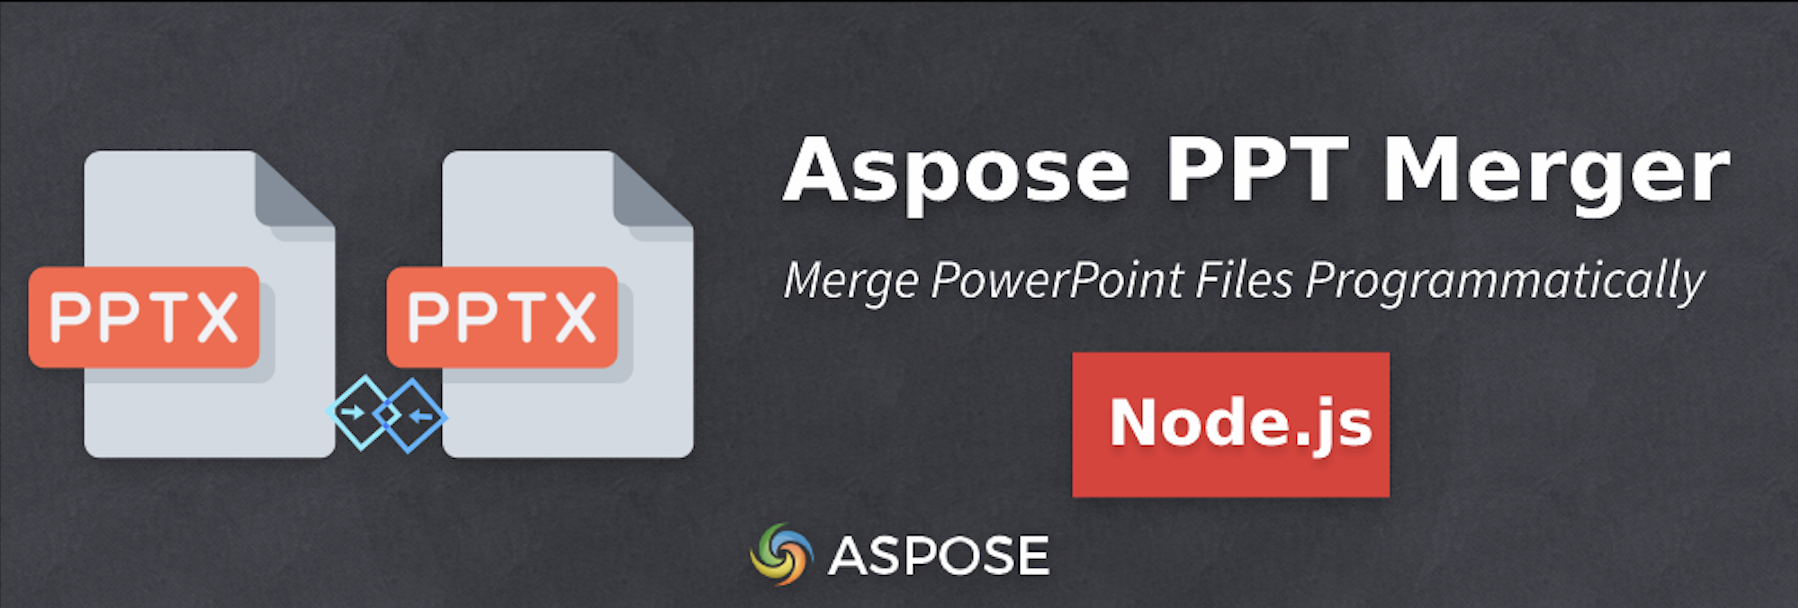 Combina più PowerPoint in Node.js - Aspose PPT Merger